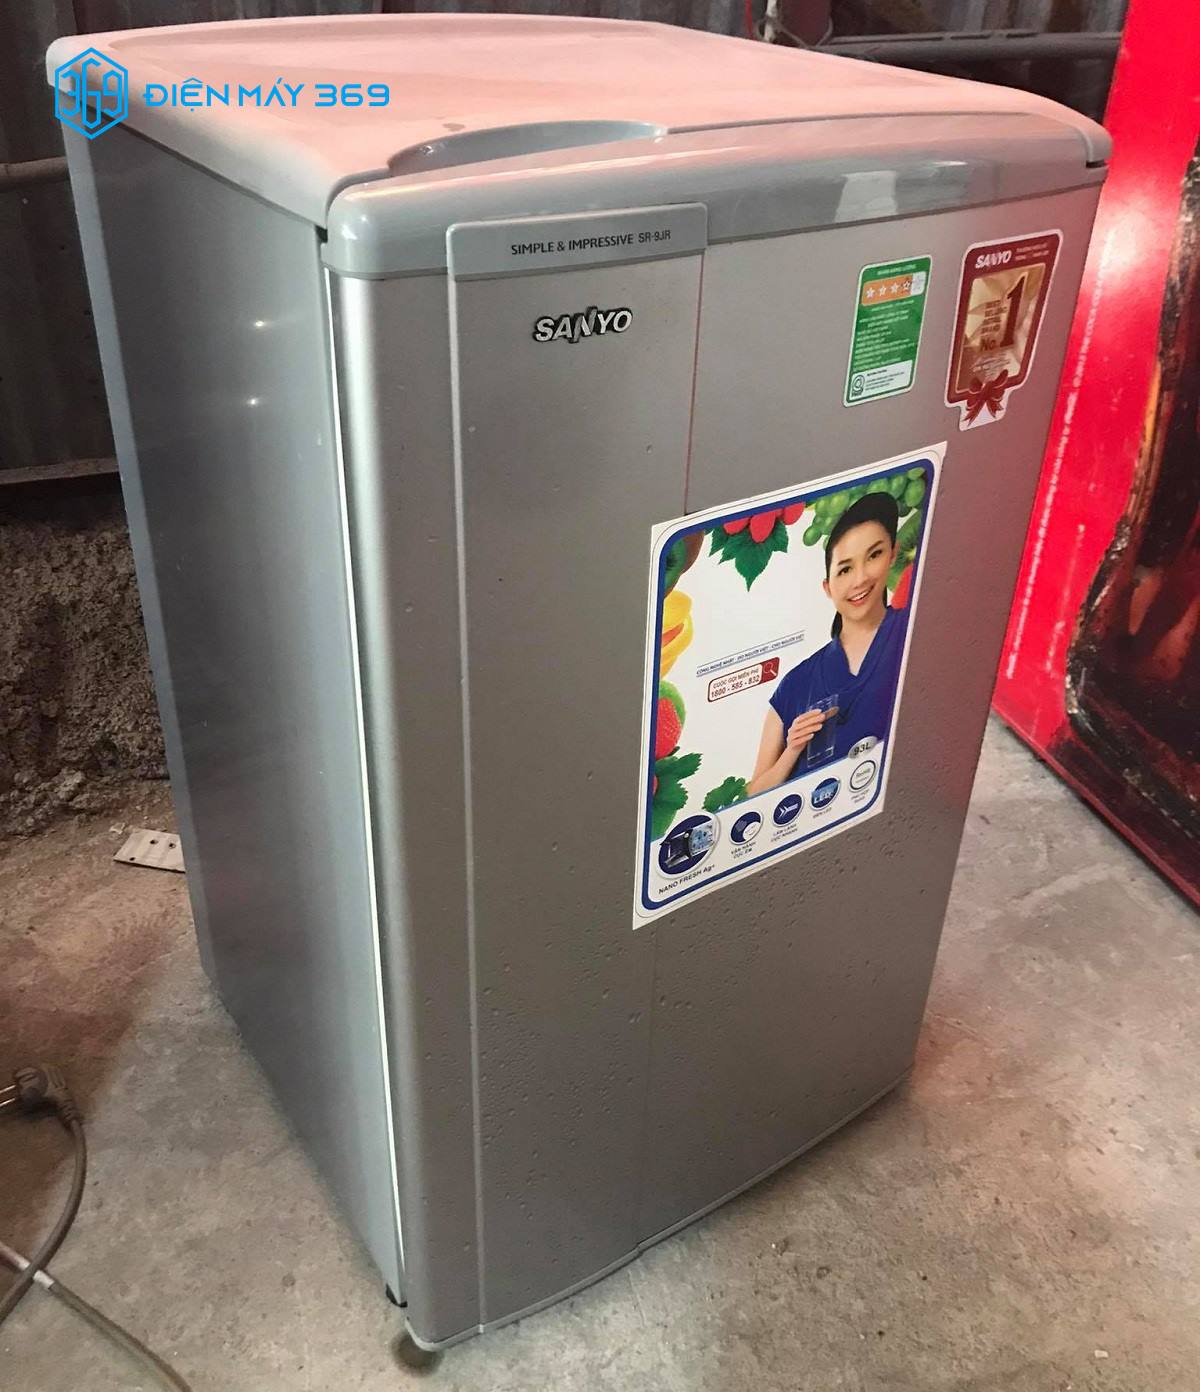 Thời gian sửa chữa và bảo hành tủ lạnh Sanyo có thể là vài giờ hoặc vài ngày. Tùy vào mức độ hư hỏng của tủ lạnh.